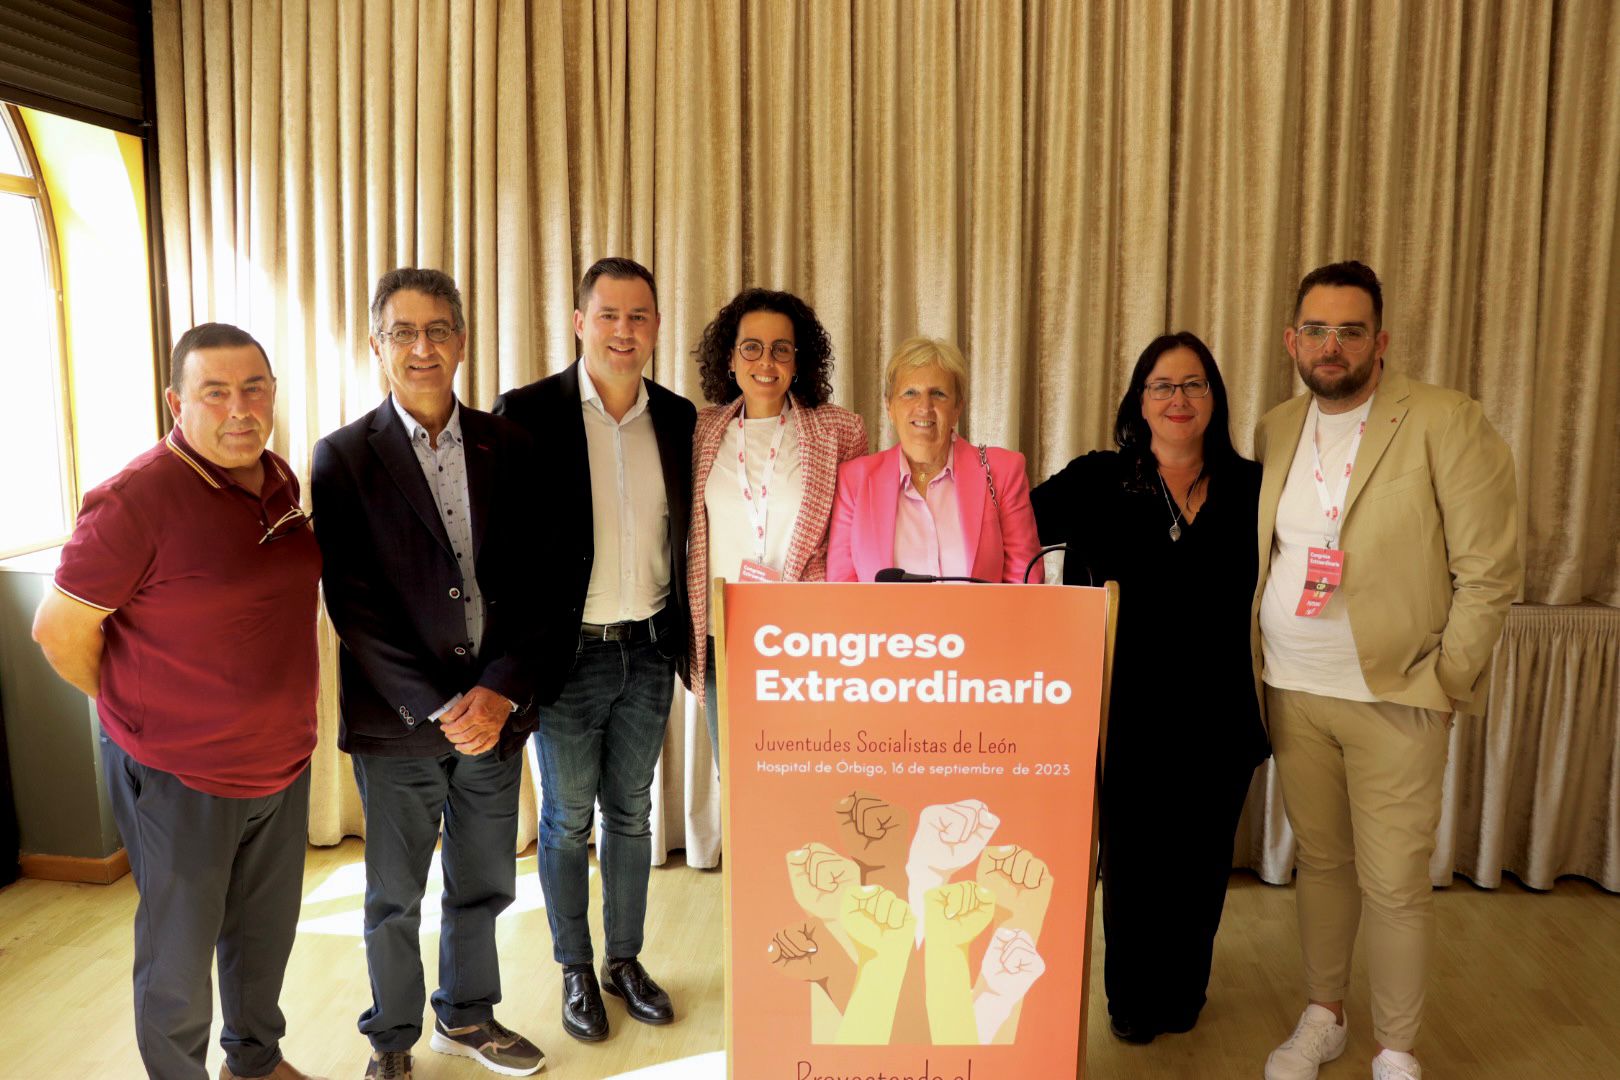 Cendón agradece la labor de Laura Busto en su etapa como secretaria general de Juventudes Socialistas de León y felicita la reelección de José Rubio al frente de la organización